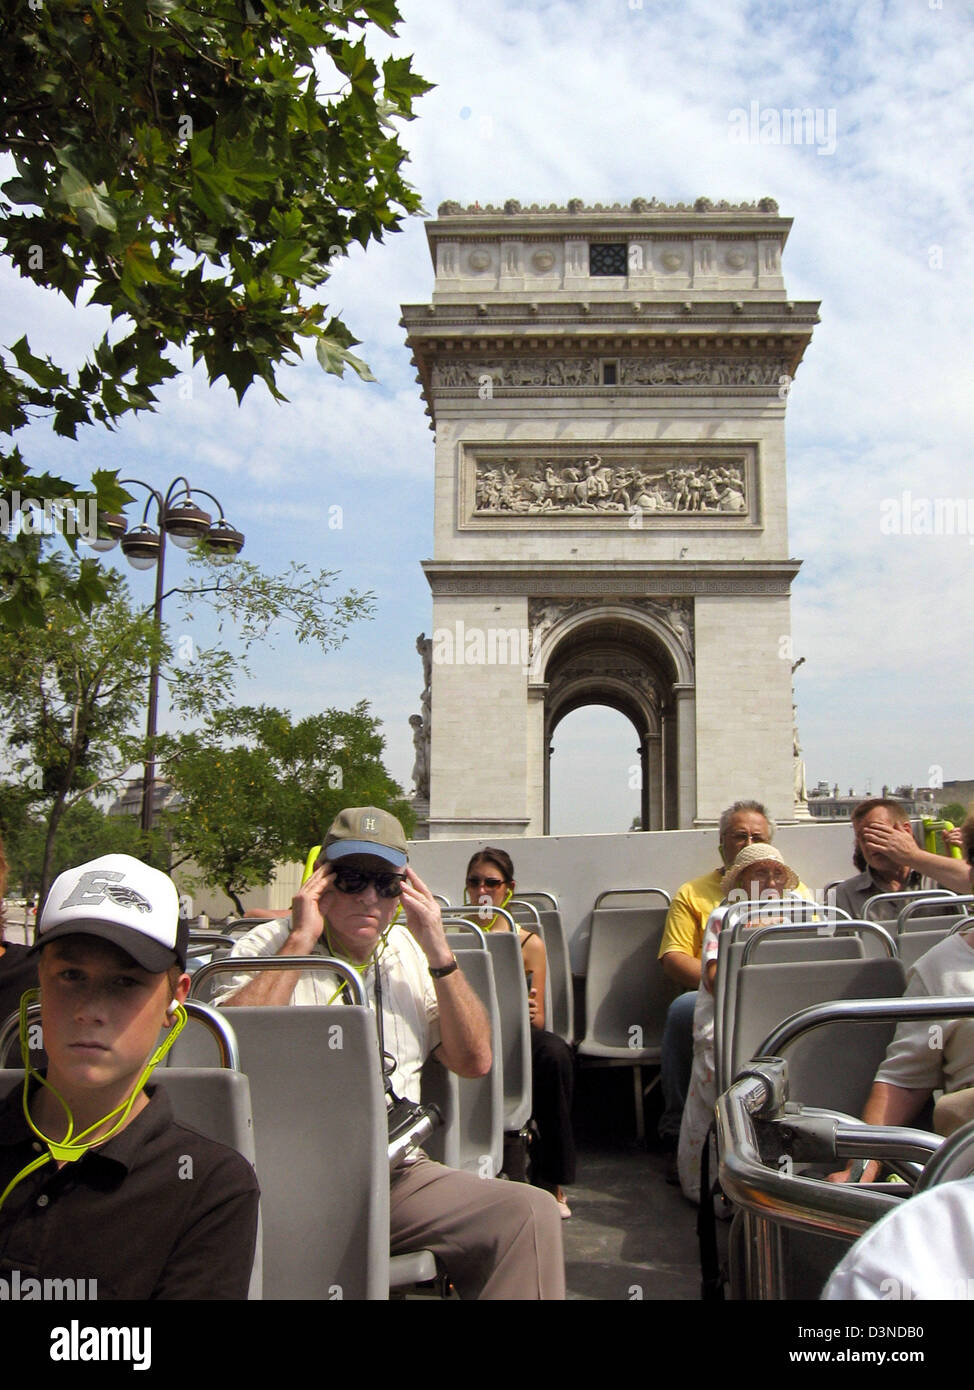 (Dpa-Datei) Touristen sitzen in einem oben offenen Bus vorbei an der Arc de Triomphe während ein Seufzer-seeing-Tour in Paris, Frankreich, 1. August 2005. Foto: Frank Kleefeldt Stockfoto